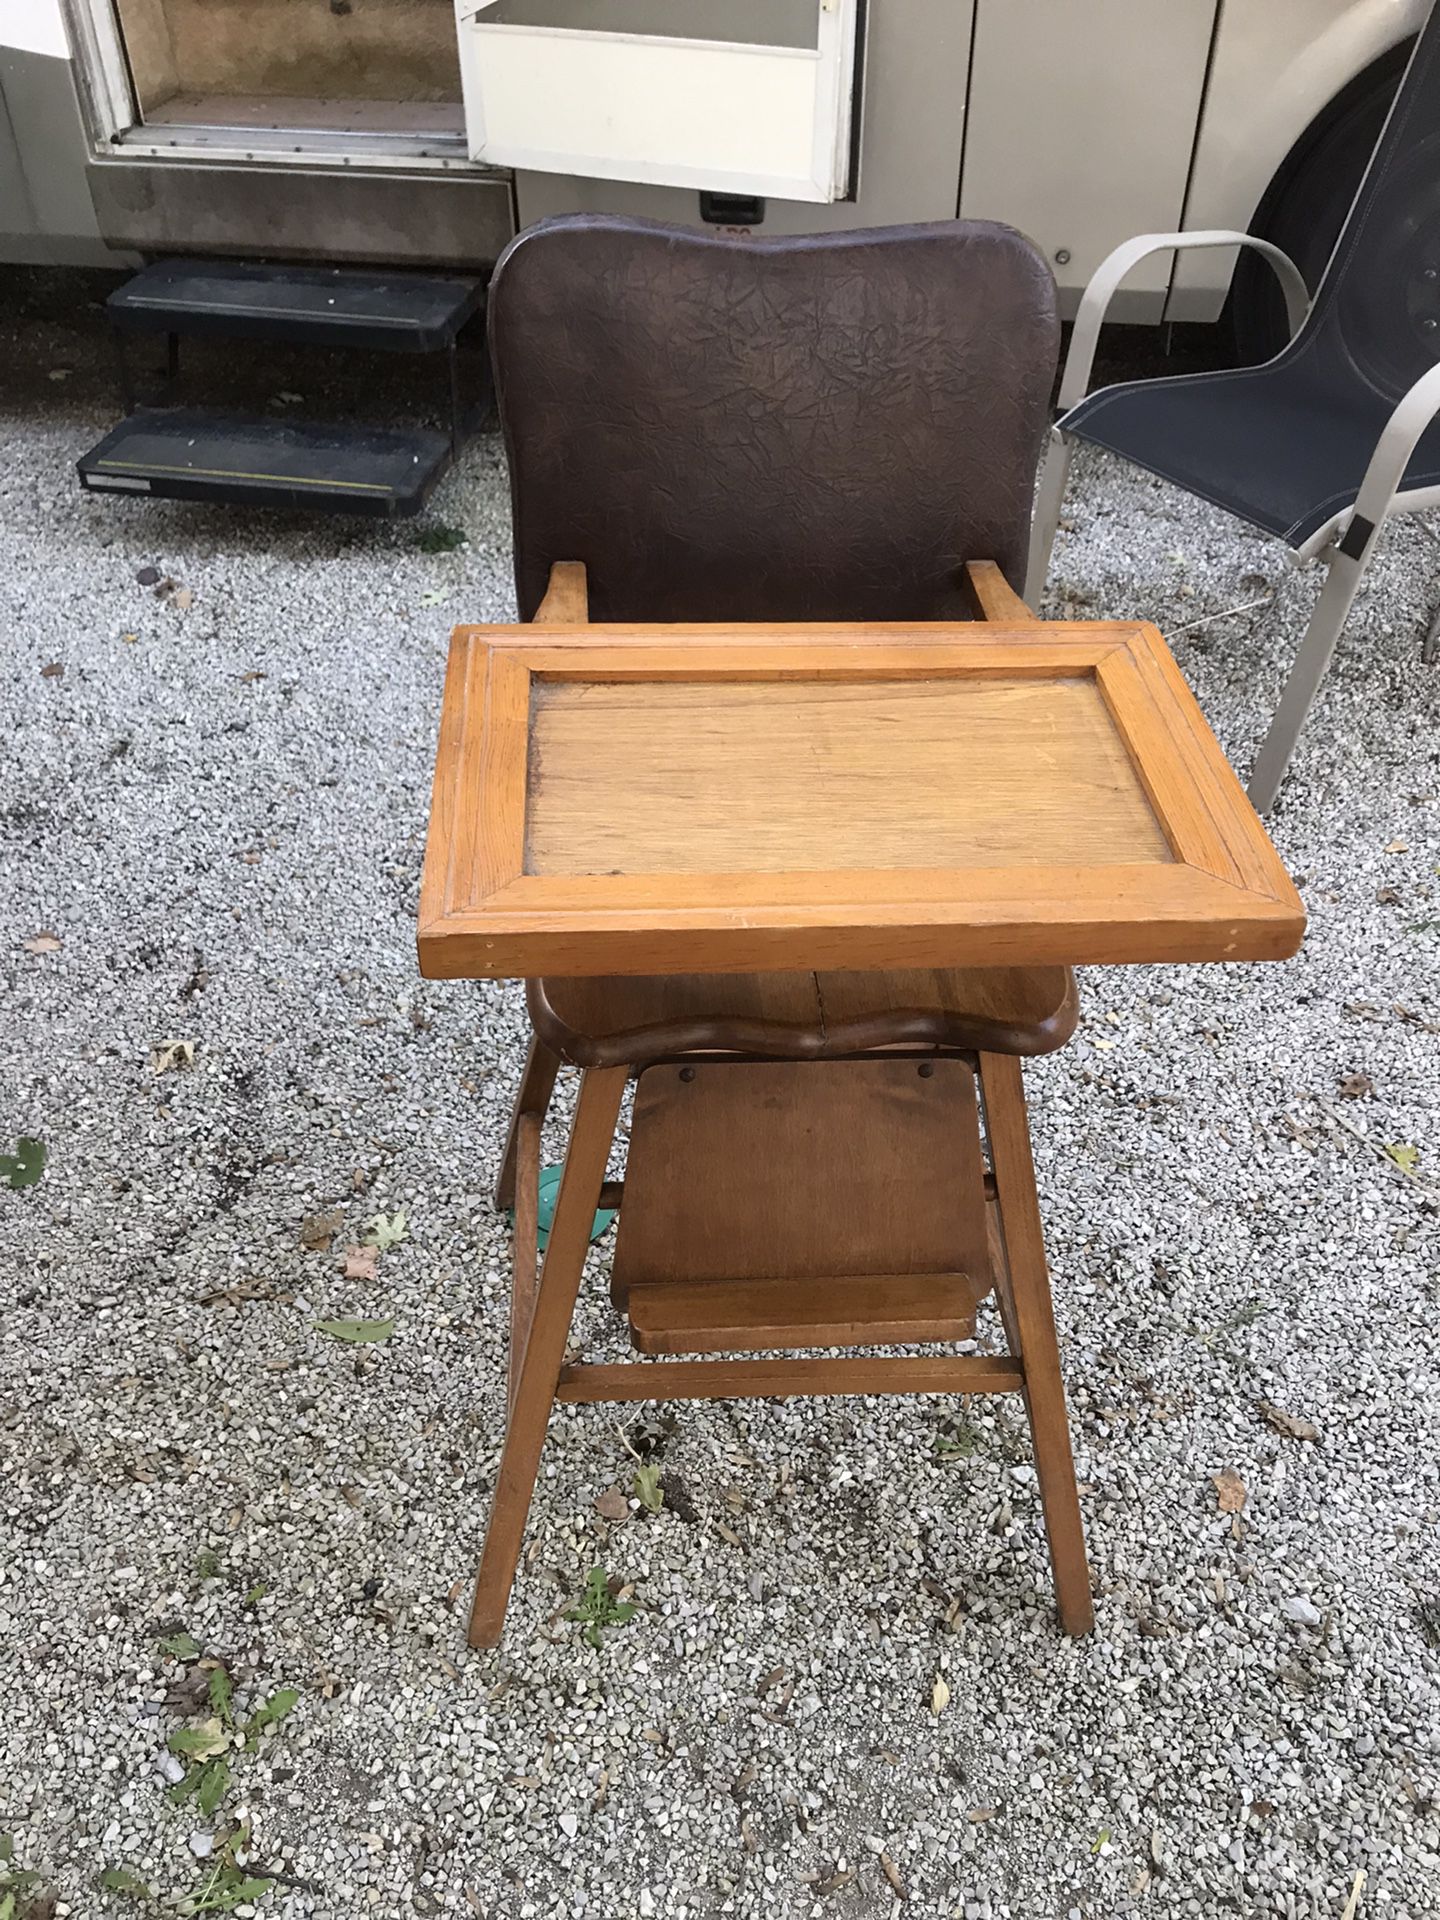 Wooden High Chair 